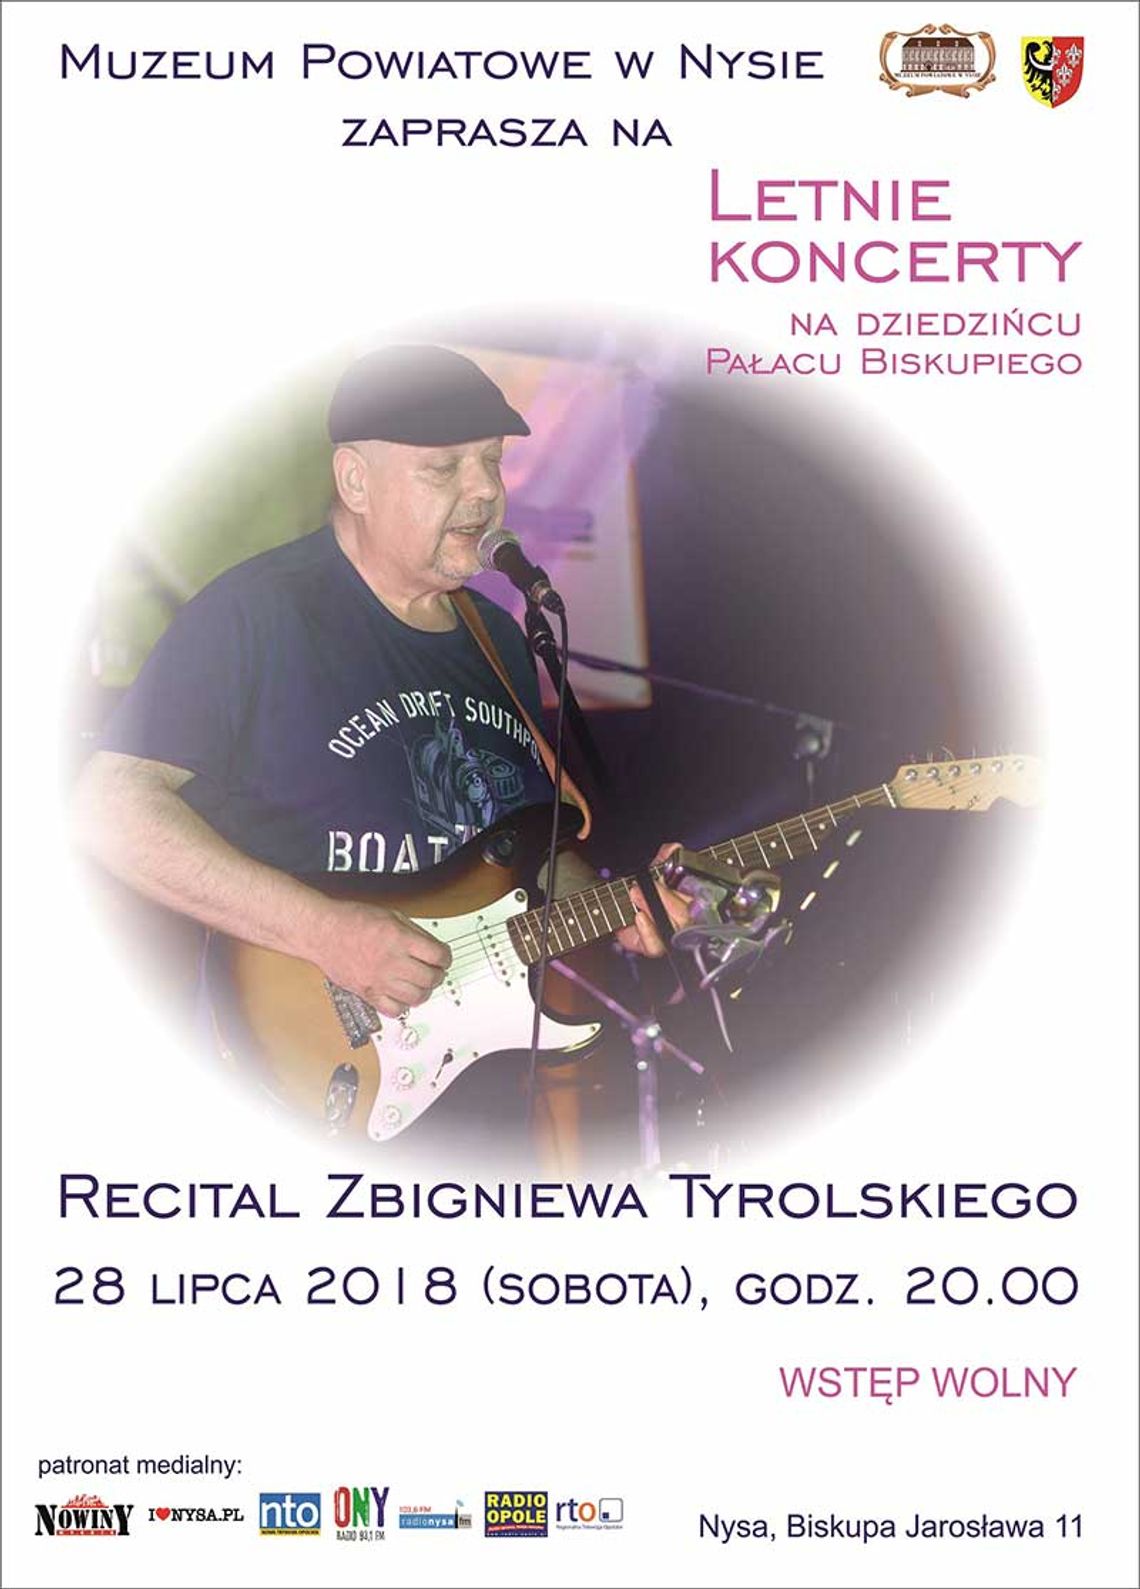 Recital Zbigniewa Tyrolskiego - gitarzysty i wokalisty. 28 lipca 2018 (sobota), godz. 20.00